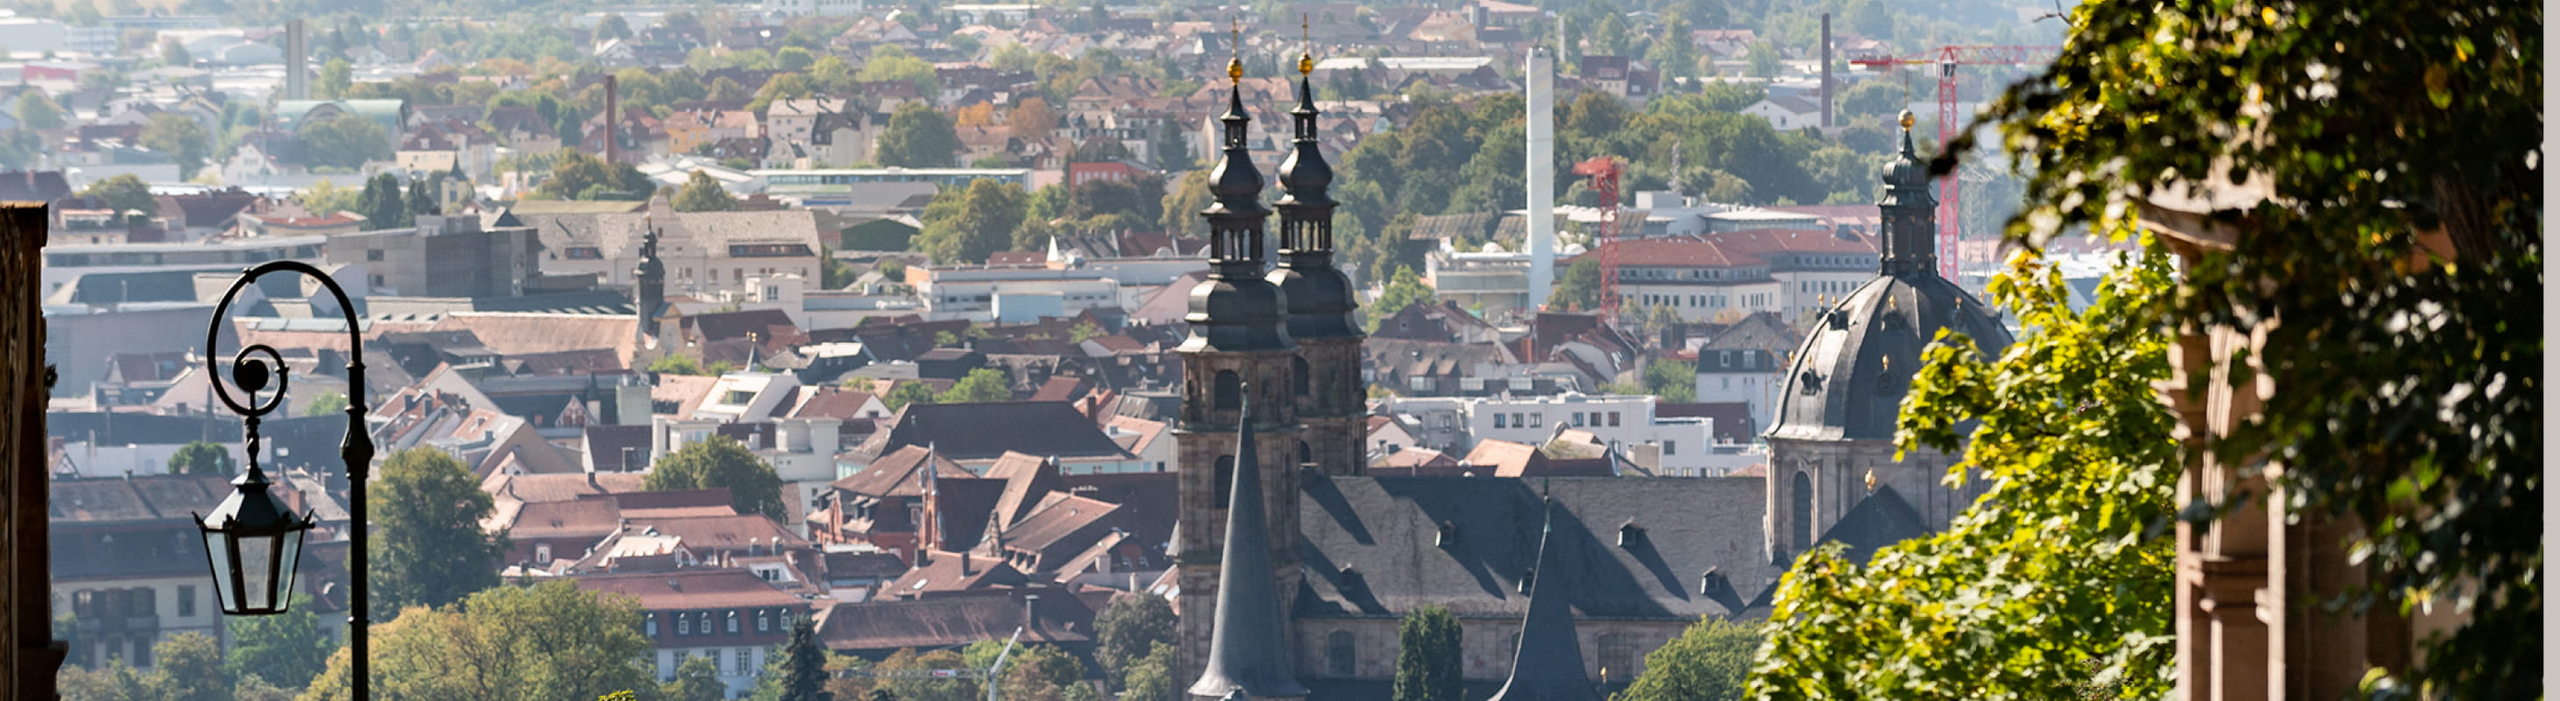 Hoch oben - Das Kloster über den Dächern von Fulda